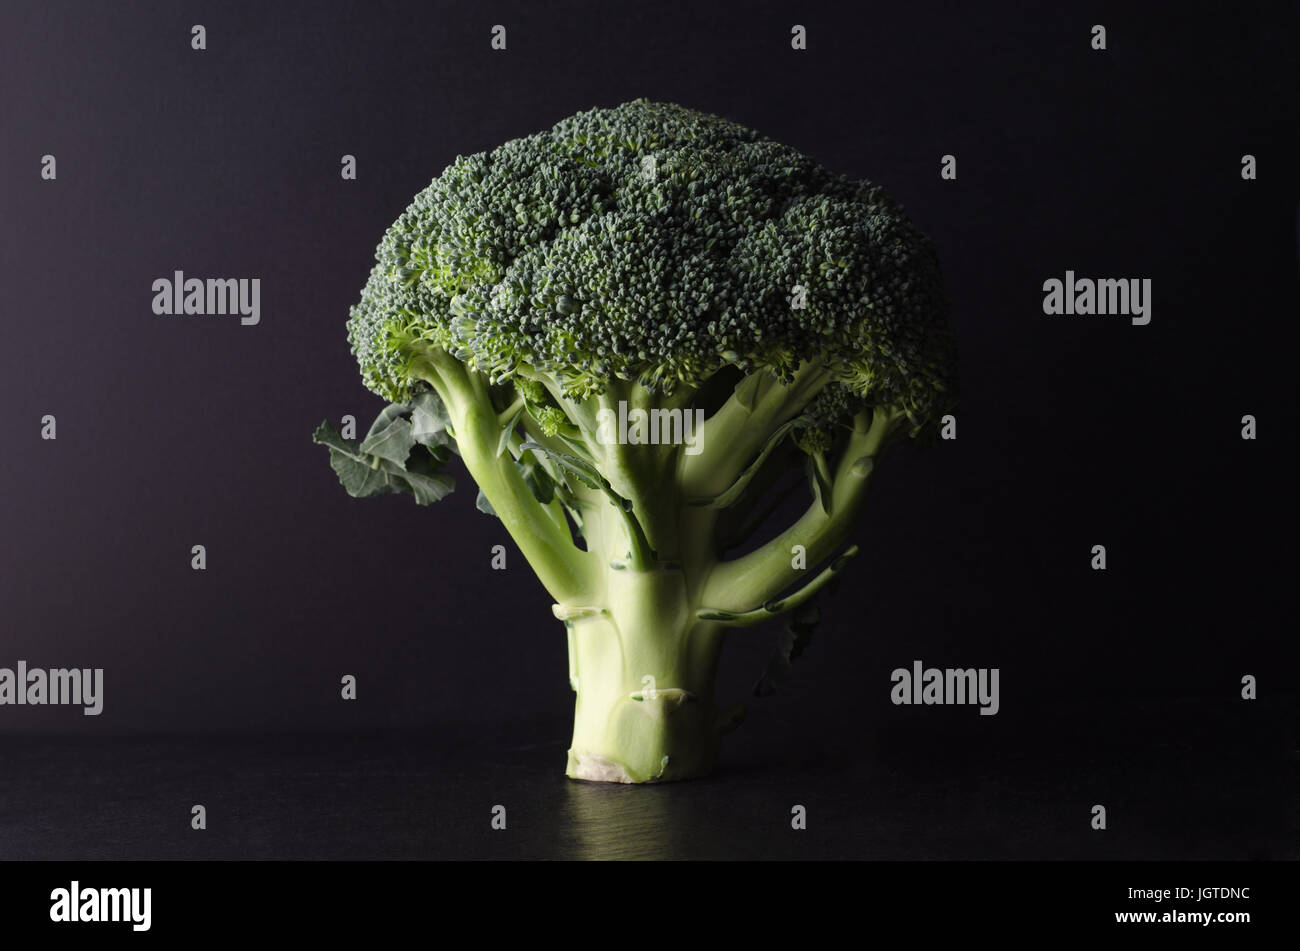 Una testa di broccoli, albero sagomato e in posizione verticale sulla superficie nera su sfondo nero. Accesa per creare scuro, moody effetto e forte contrasto Foto Stock